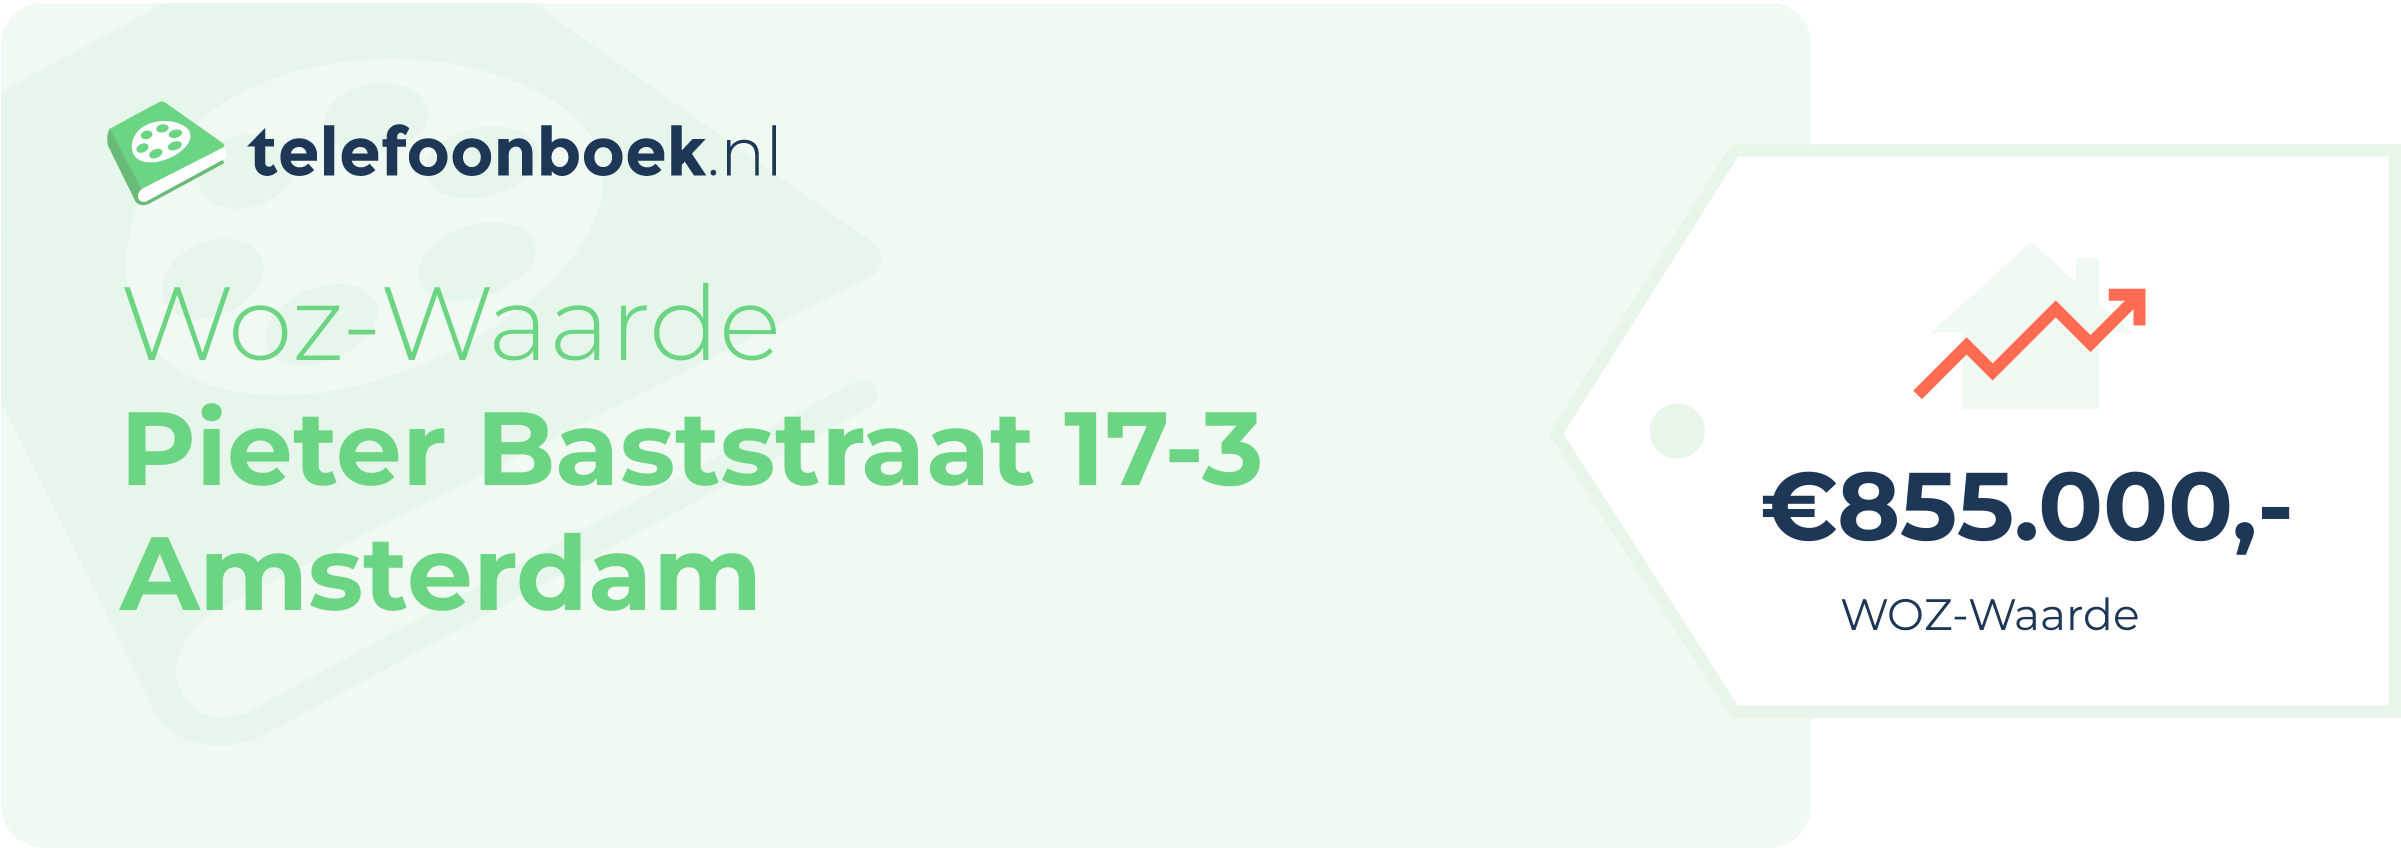 WOZ-waarde Pieter Baststraat 17-3 Amsterdam